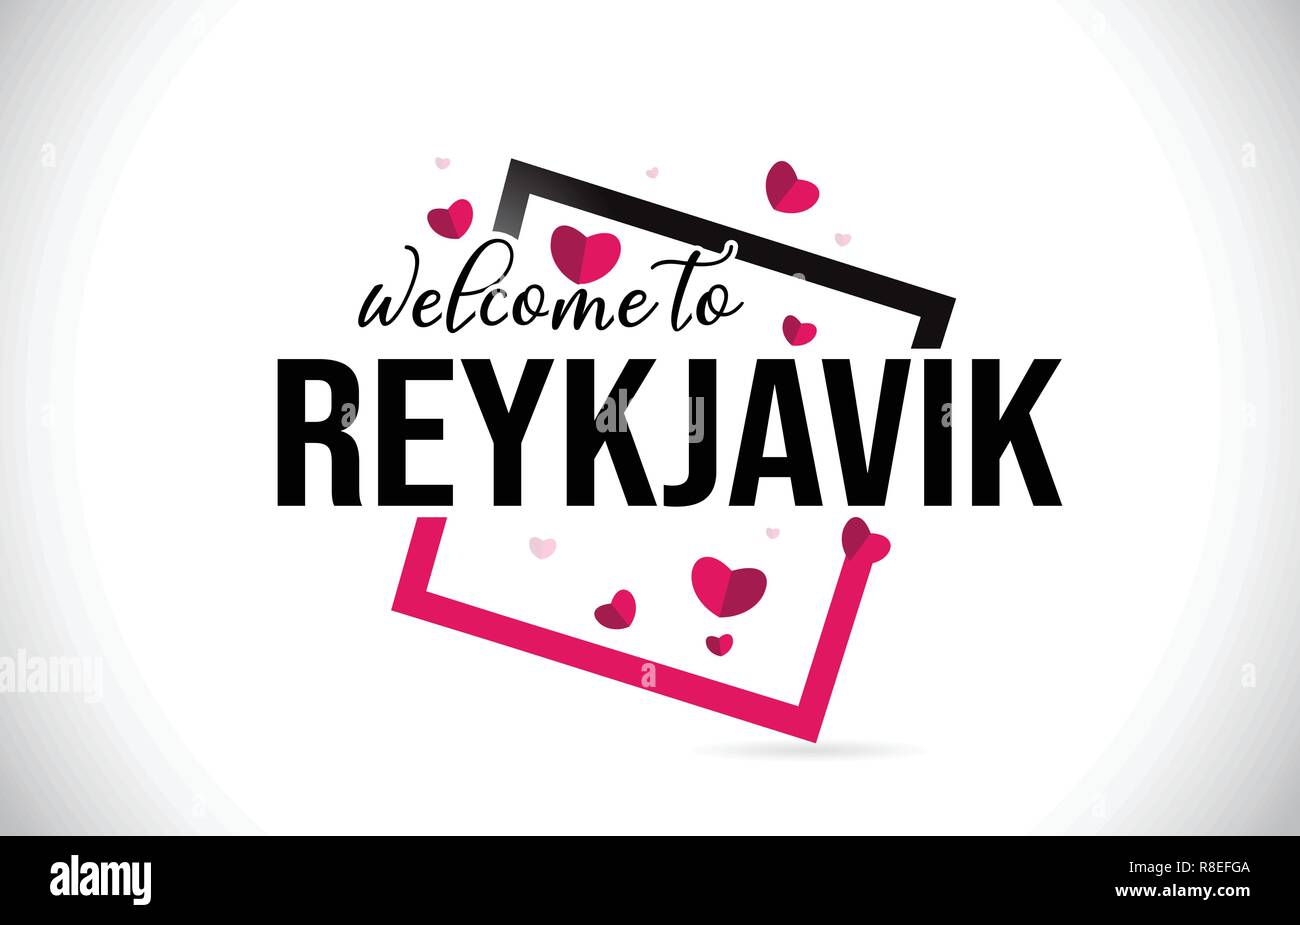 Mot de bienvenue de Reykjavik avec texte et police manuscrite coeurs rouges Conception carrée Illustration vecteur. Illustration de Vecteur